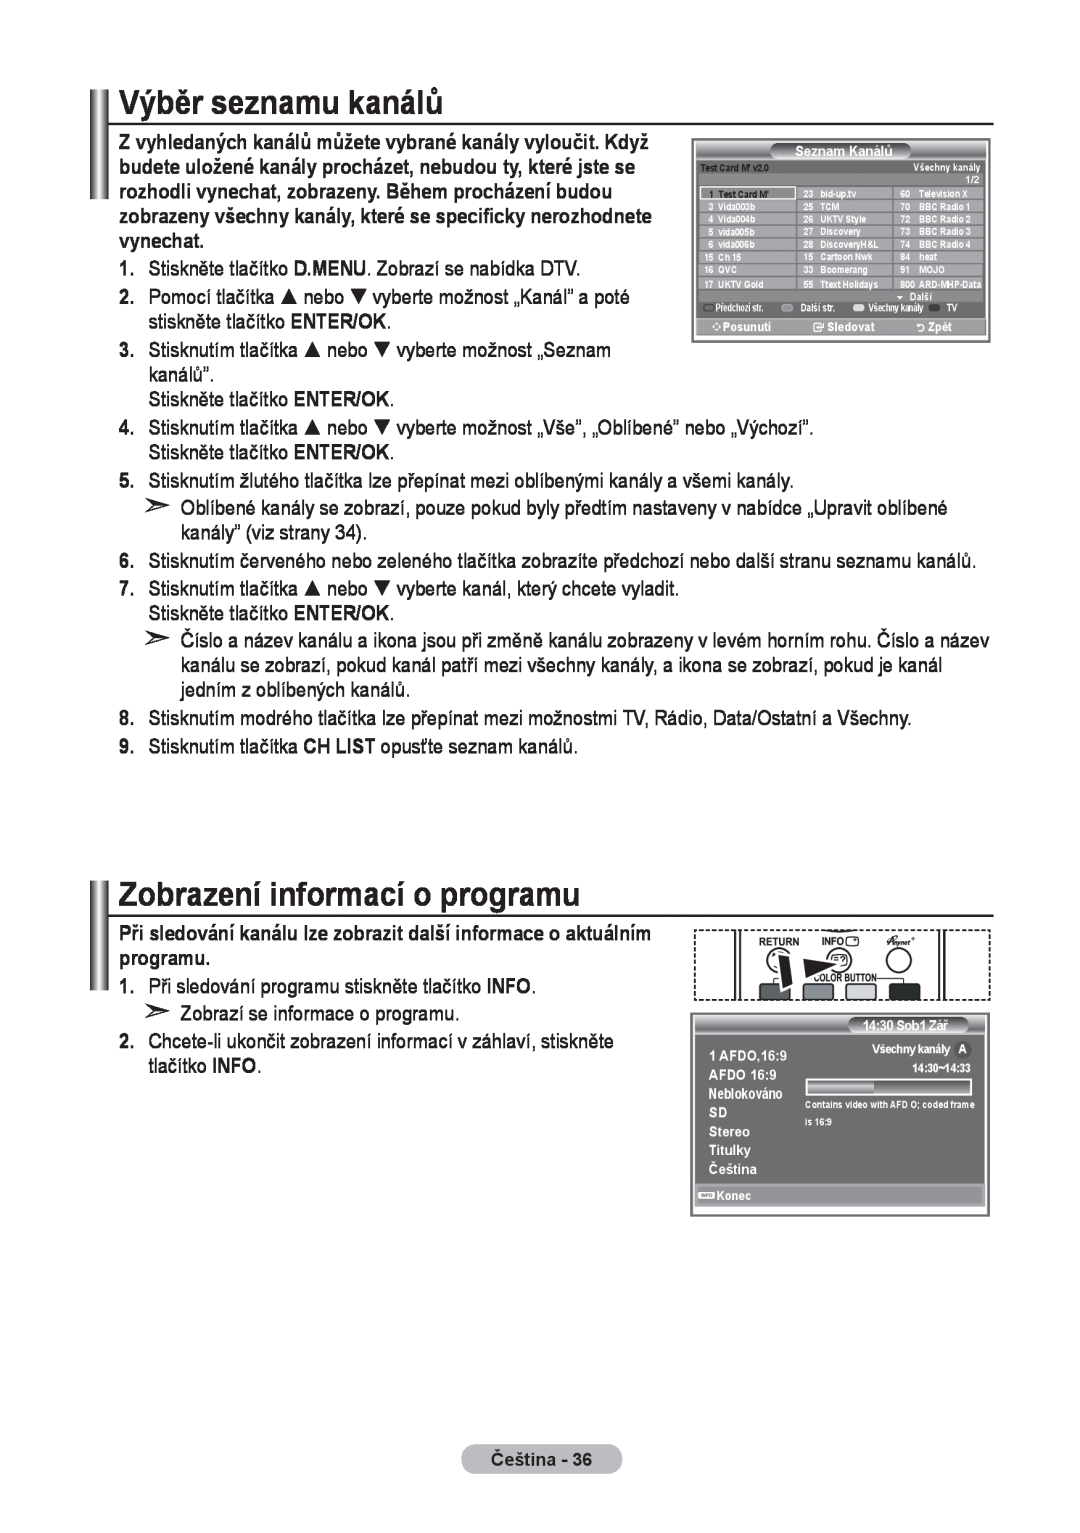 Samsung LE37R8, LE40R8, LE32R8 manual Výběr seznamu kanálů, Zobrazení informací o programu, 1430~1433 